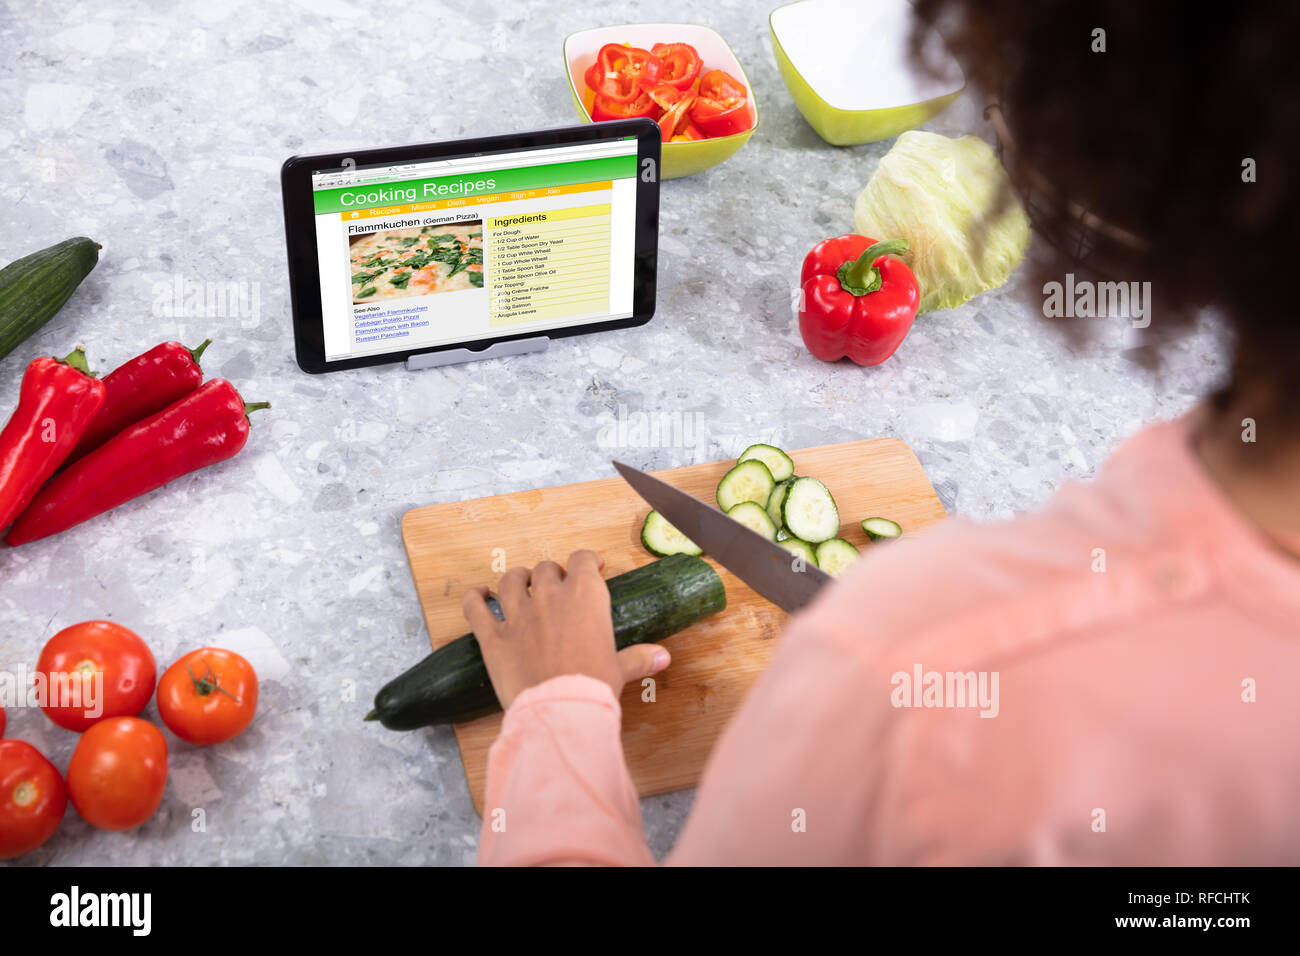 Woman's Hand Cutting Chou sur planche à découper avec les Recettes de cuisine sur écran de tablette numérique Banque D'Images